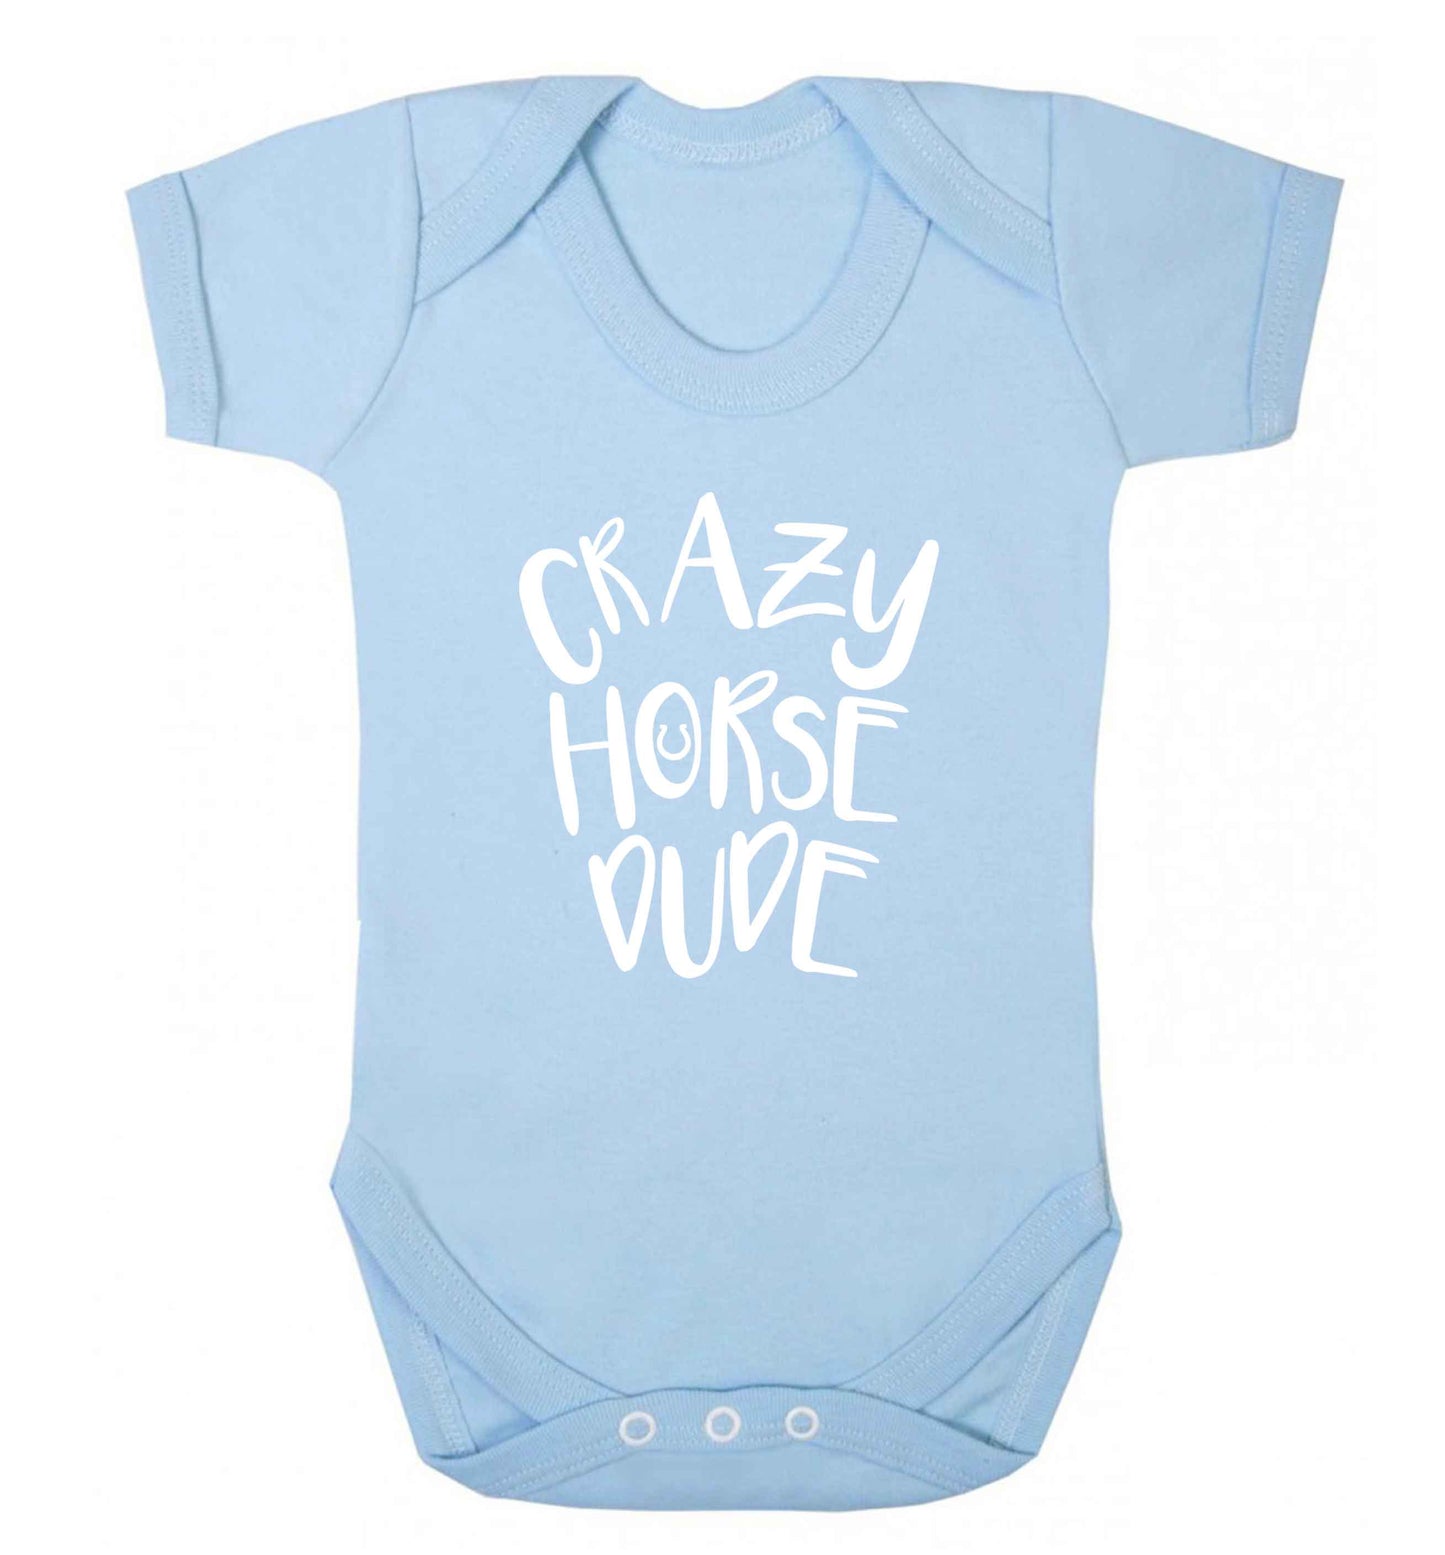 Crazy horse dude baby vest pale blue 18-24 months